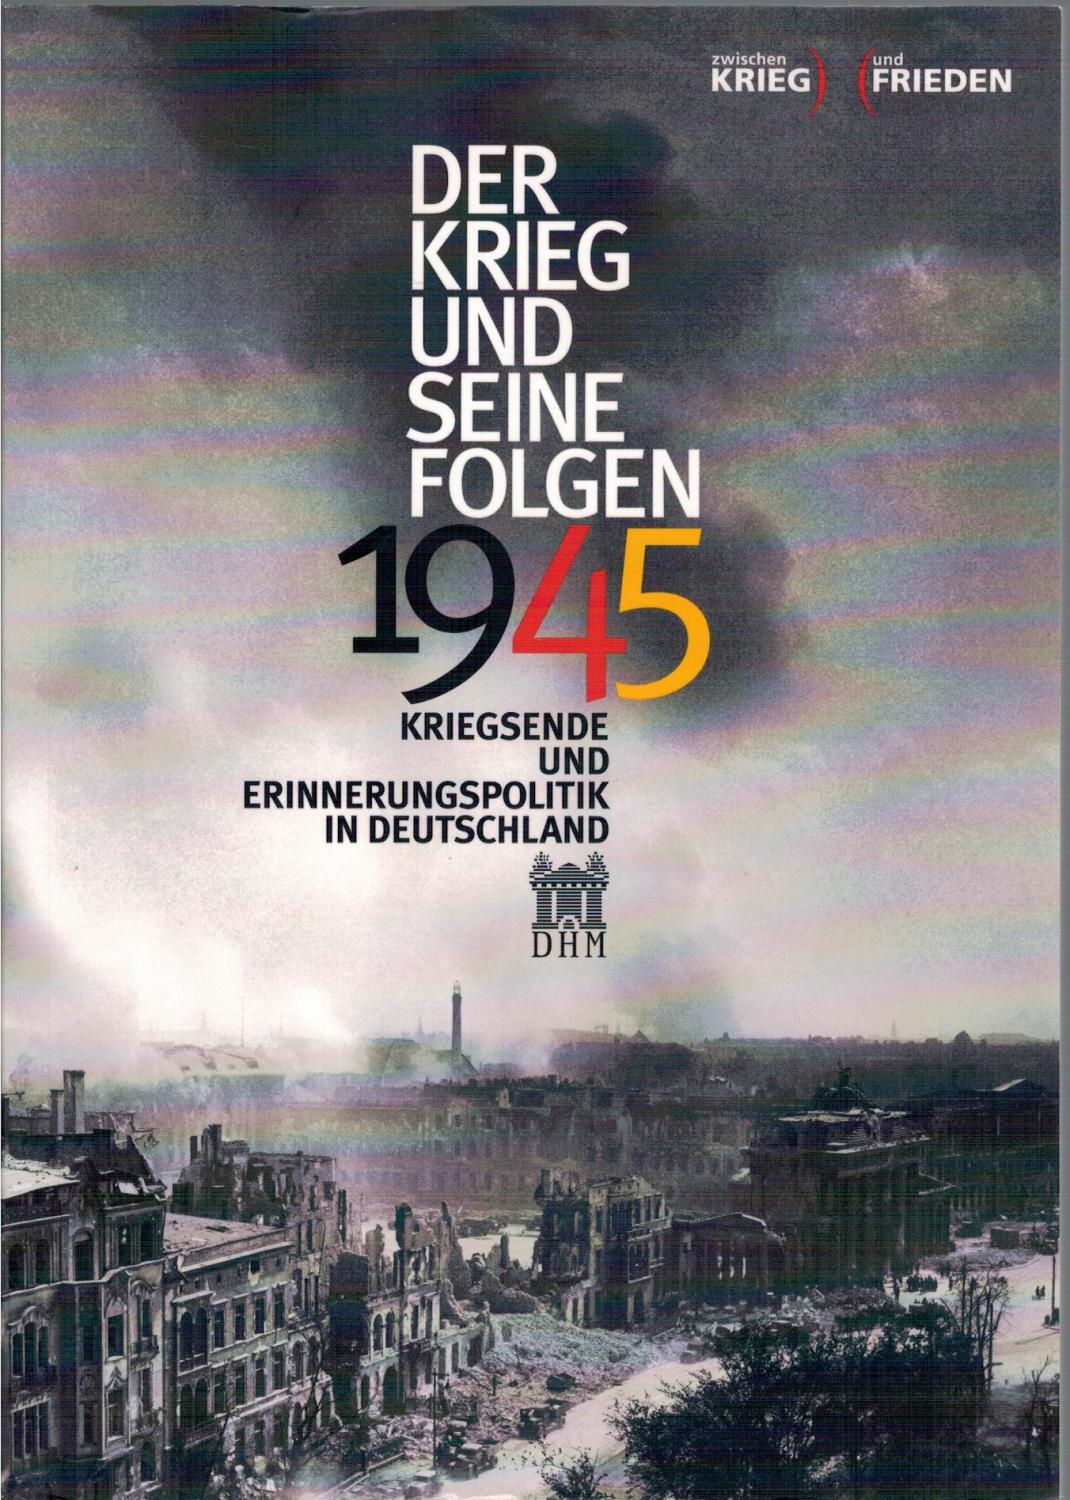 1945 - Der Krieg und seine Folgen: Kriegsende und Erinnerungspolitik in Deutschland